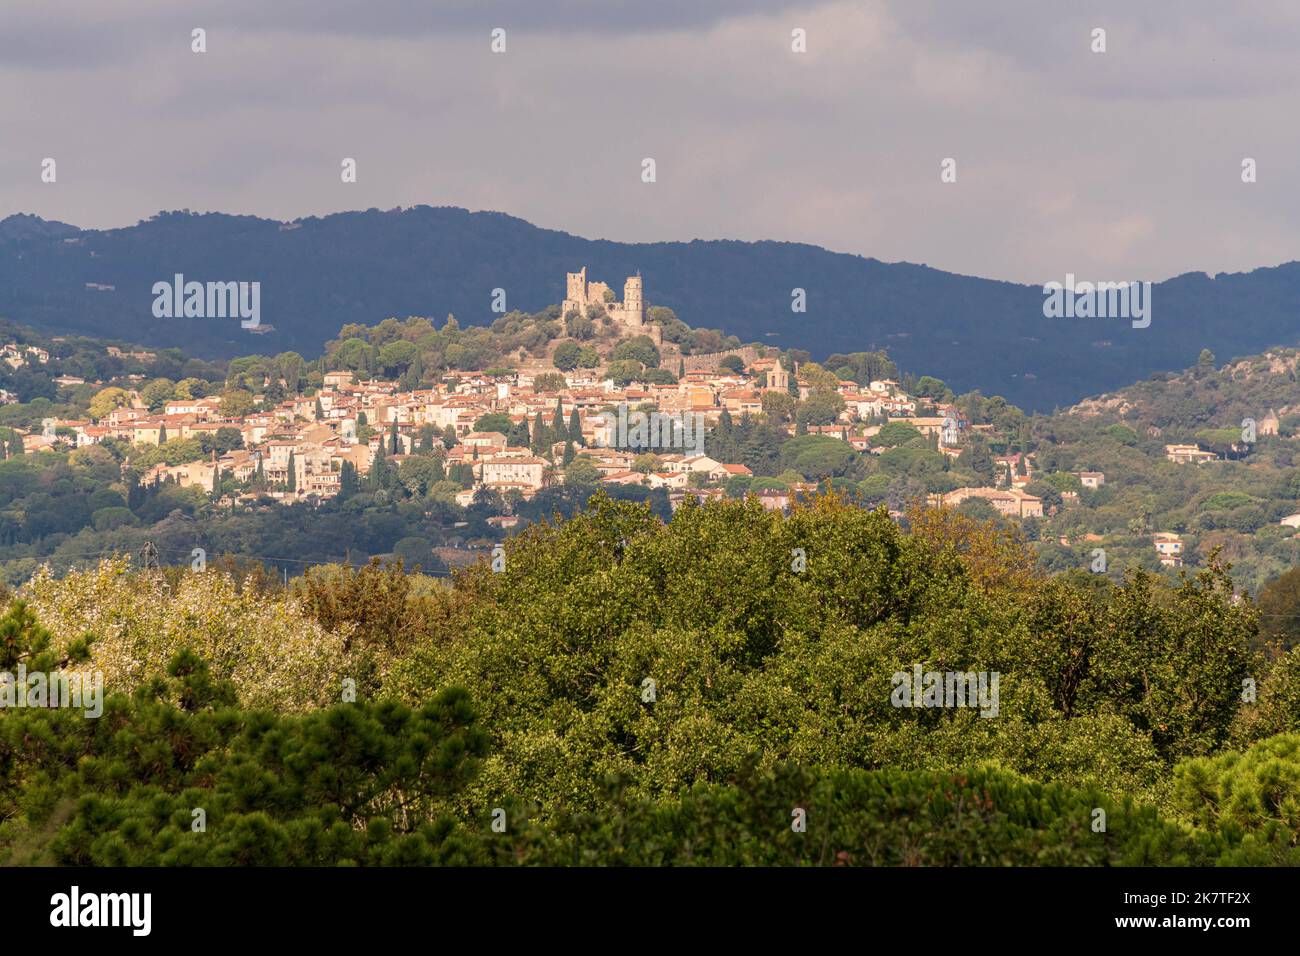 La ville de Grimaud et son château en ruines dans le département du Var de la région Provence-Alpes-Côte d'Azur dans le sud de la France. Banque D'Images